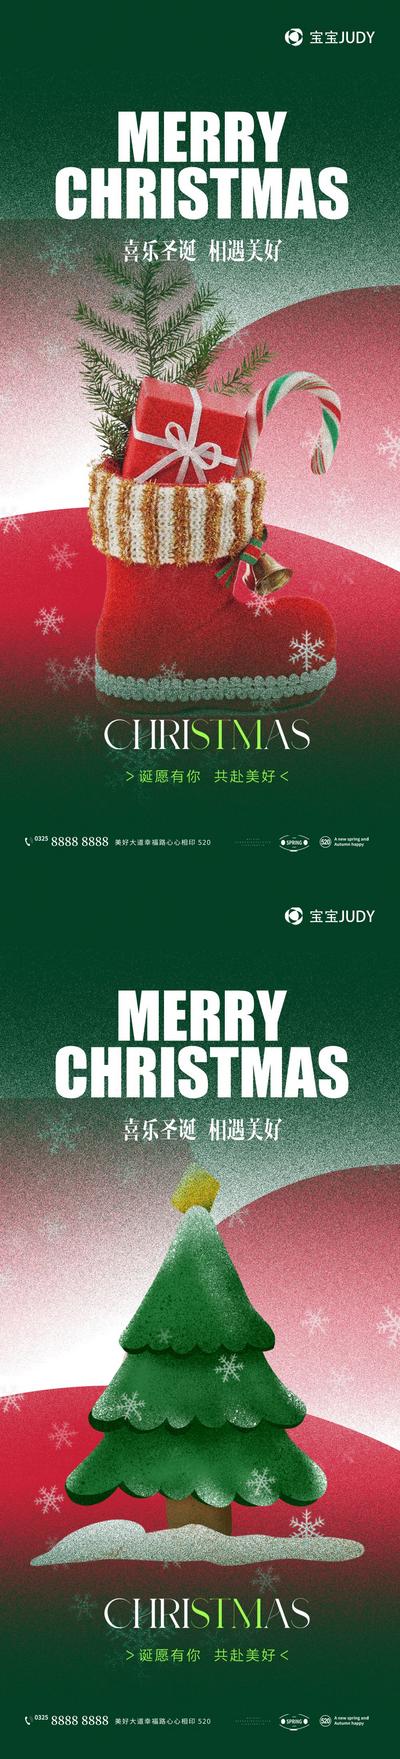 南门网 广告 海报 节日 圣诞 新年 元旦 节日海报 圣诞树 绿色 品牌 礼盒 彩带